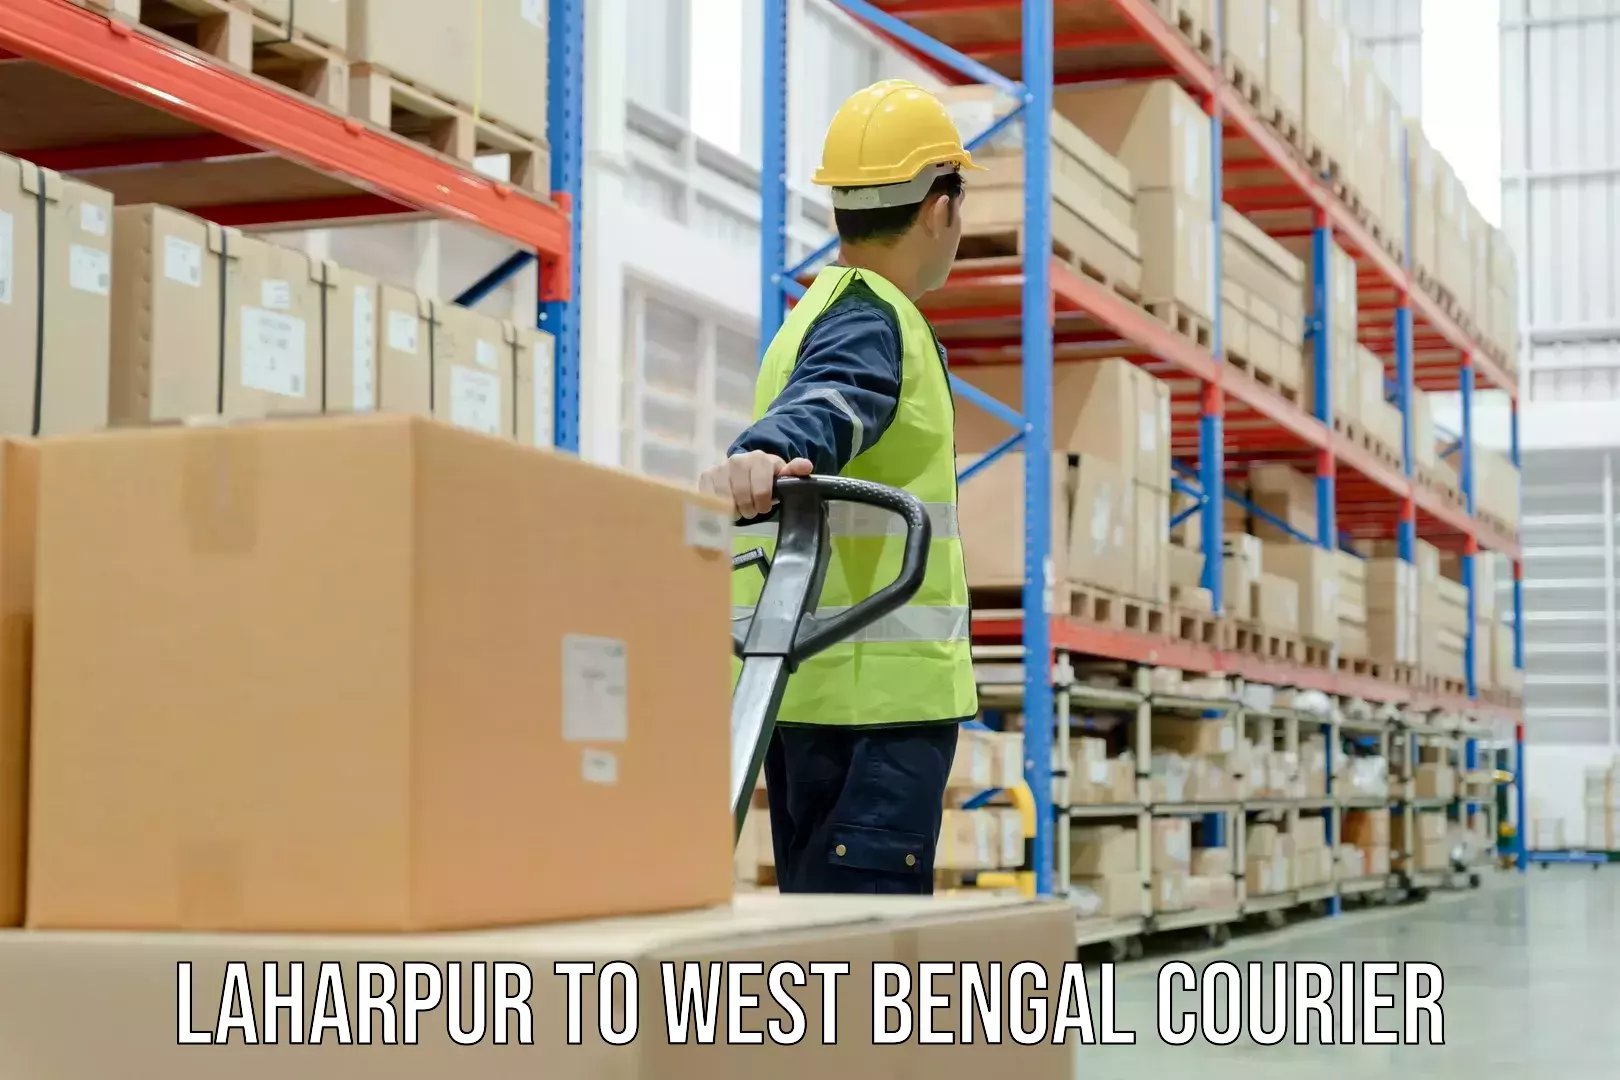 Premium courier solutions Laharpur to Haldia port